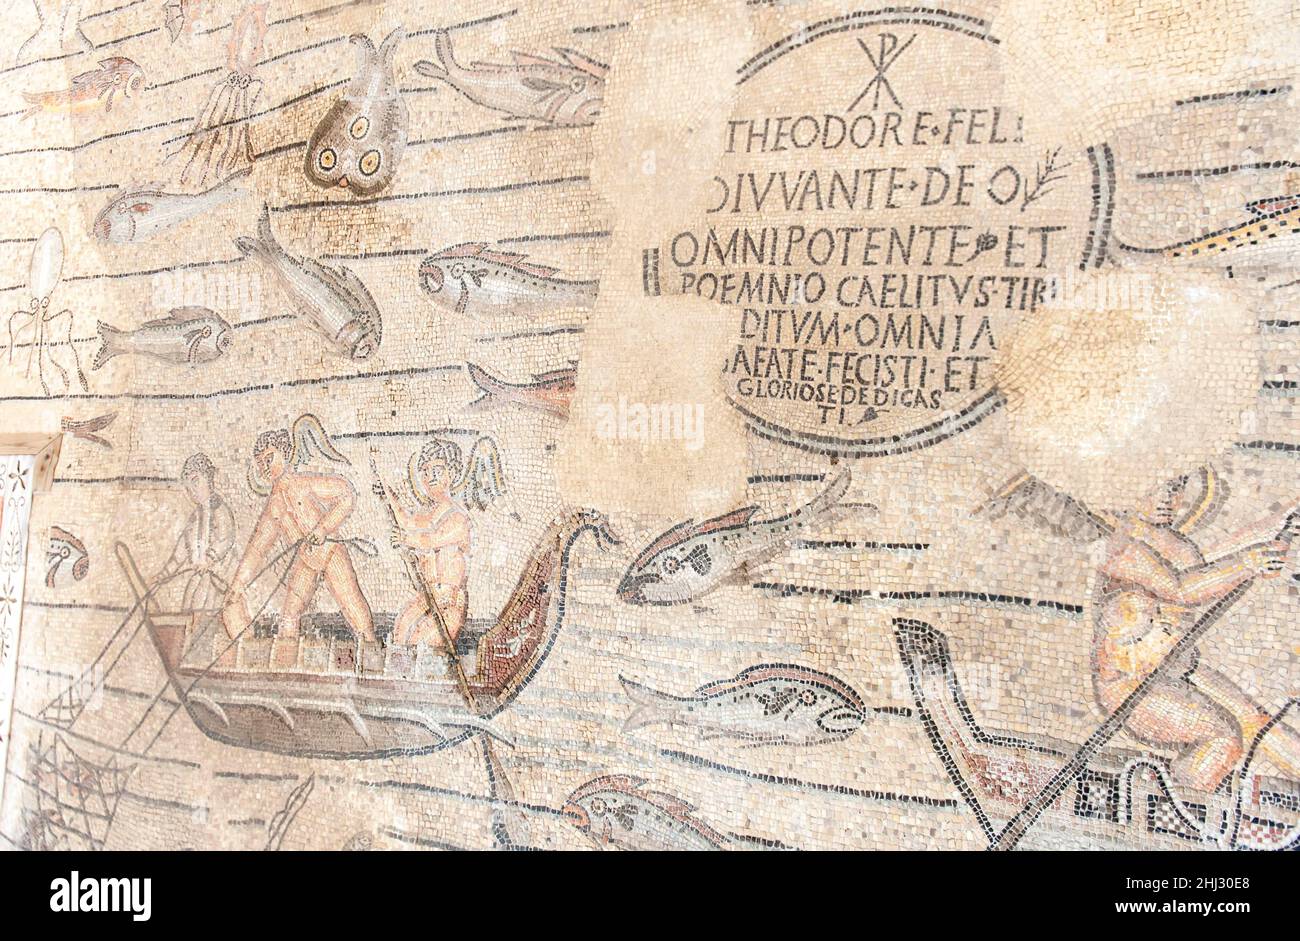 Archeologia, pescatore in barca, mondo subacqueo, pesci, simboli cristiani, mosaico, Mosaico del pavimento paleocristiano, iscrizione per Teodoro Foto Stock